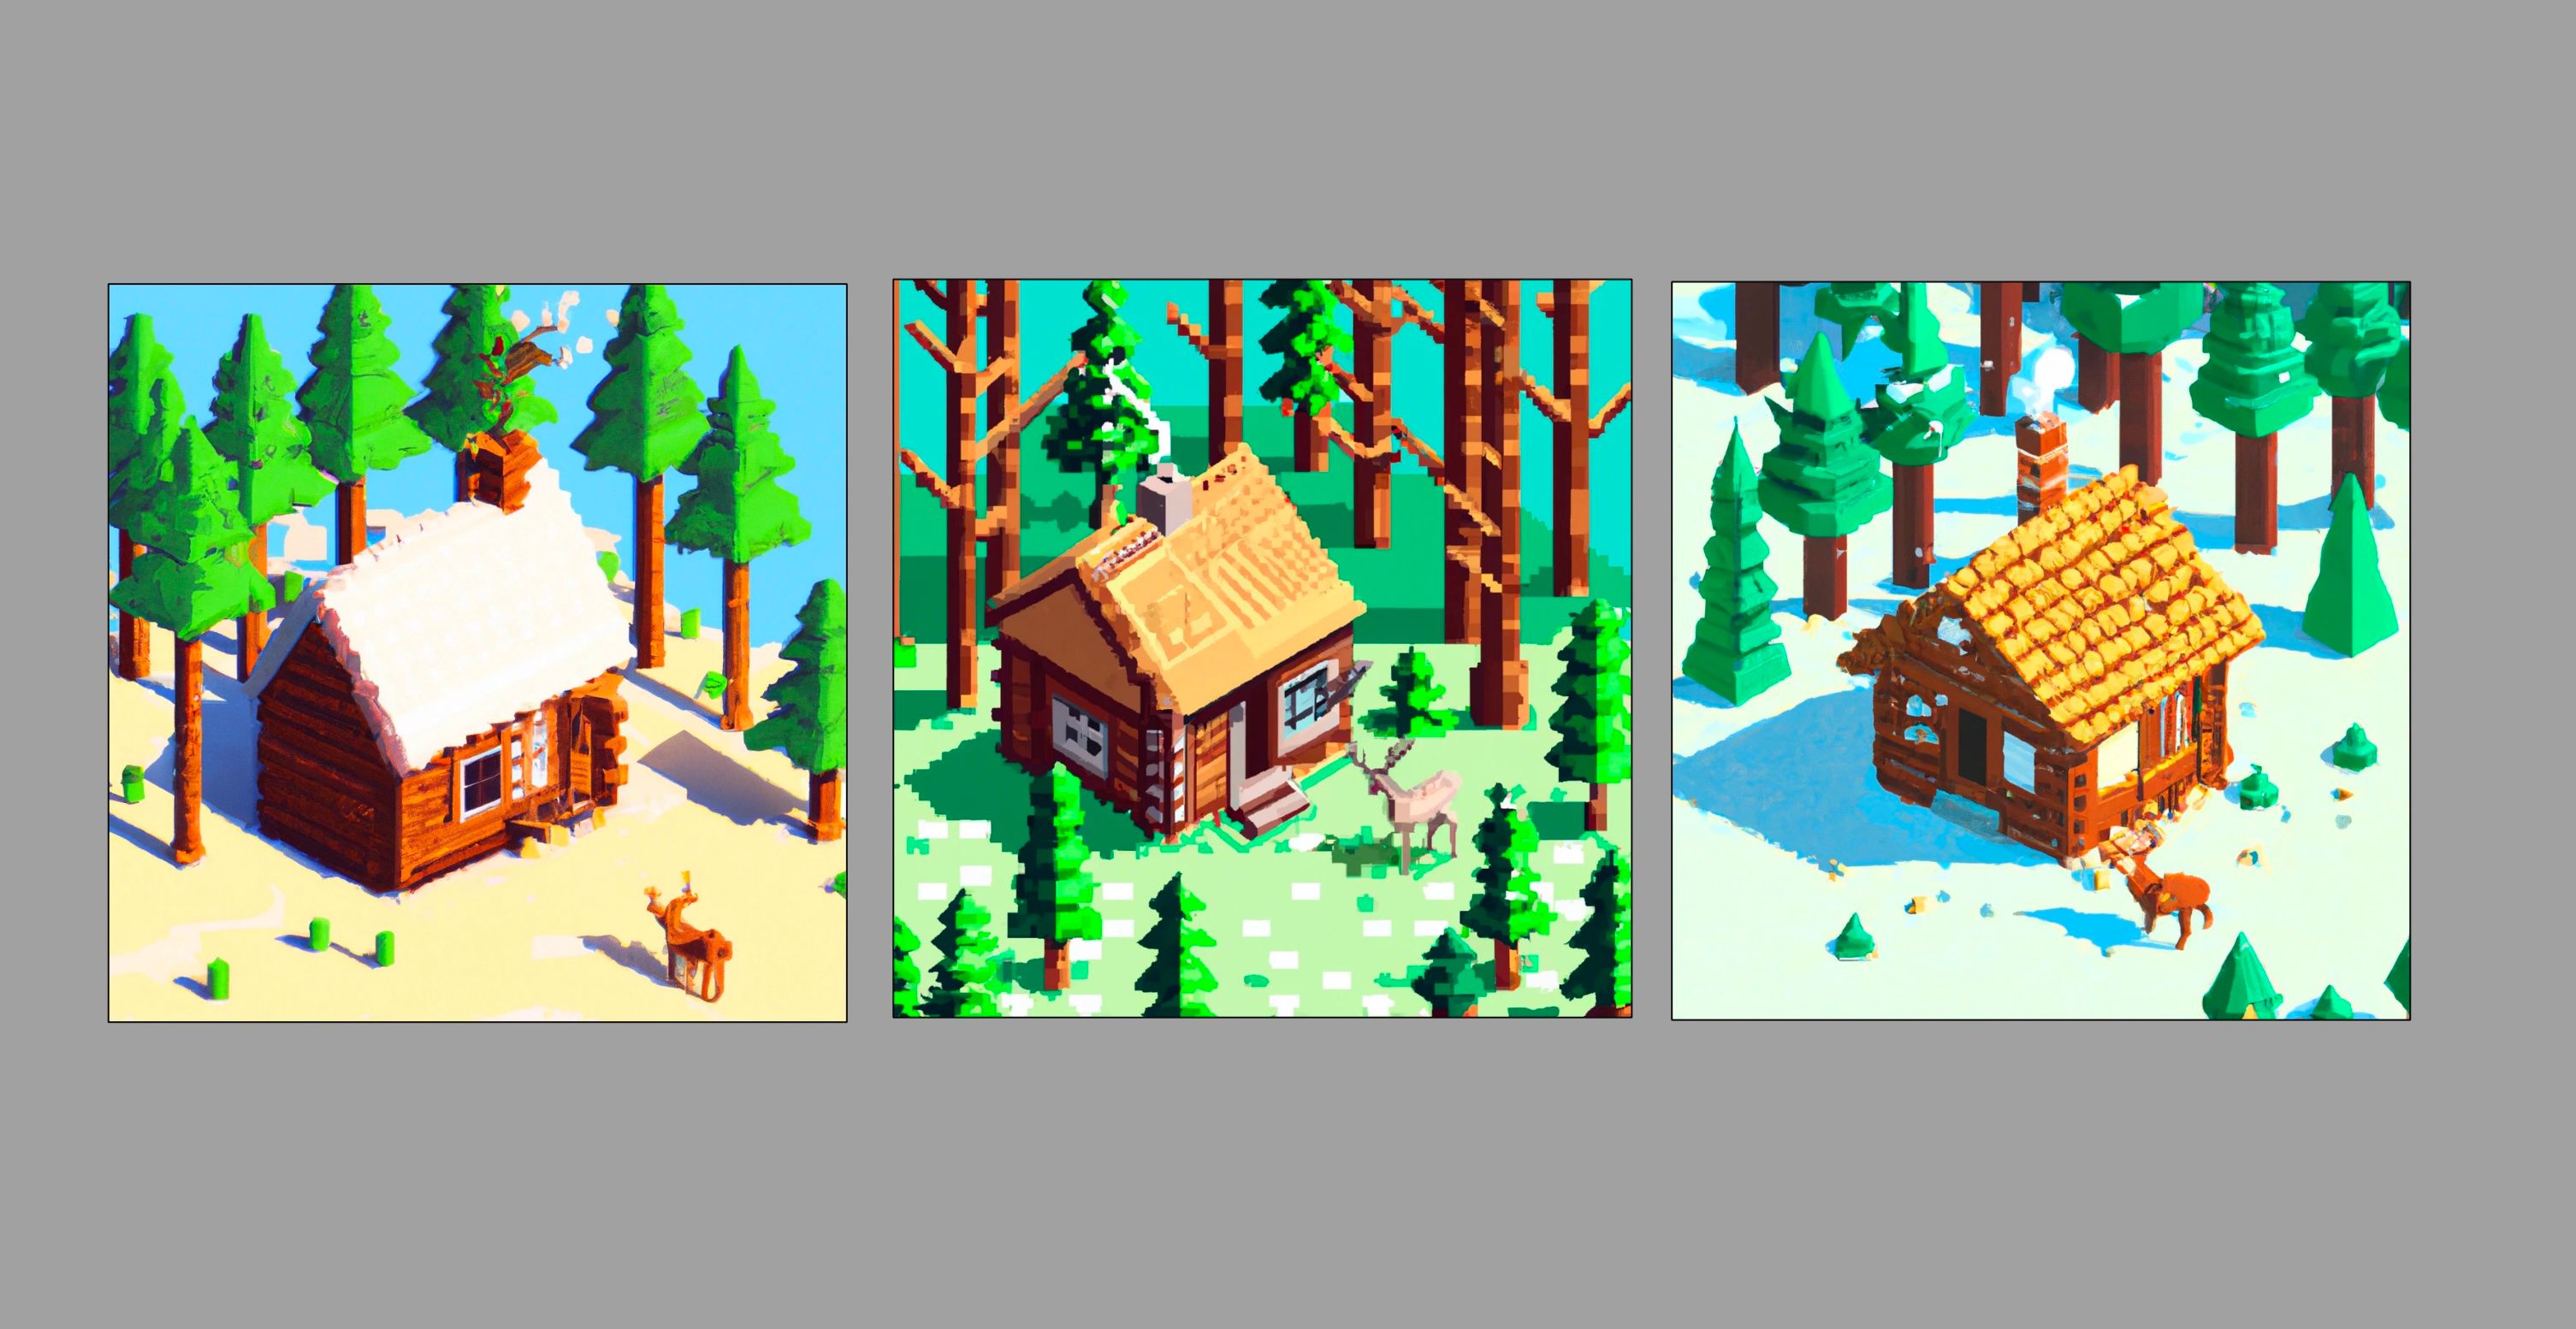 Três imagens pixel art de uma cabana na floresta criadas usando Dall-E